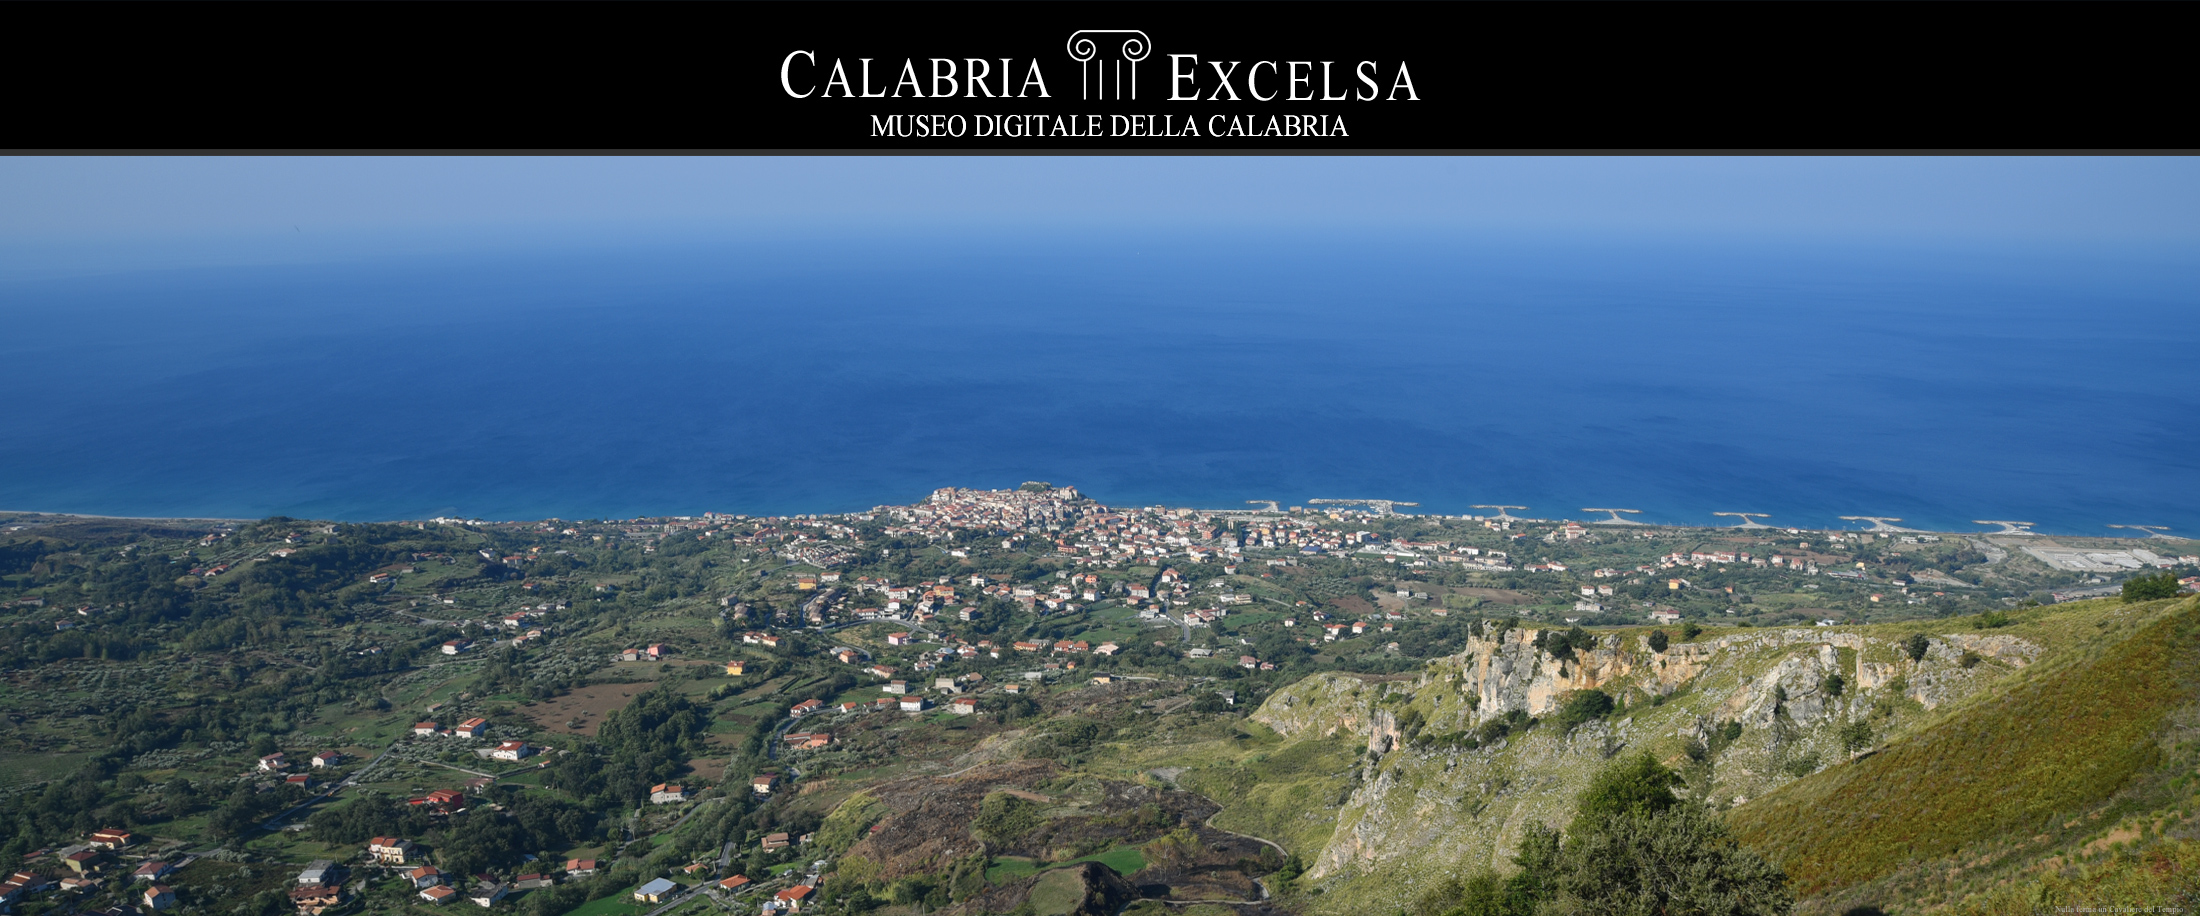 Museo Digitale della Calabria - Esposizione Opre D'Arte del paesaggio e della Natura